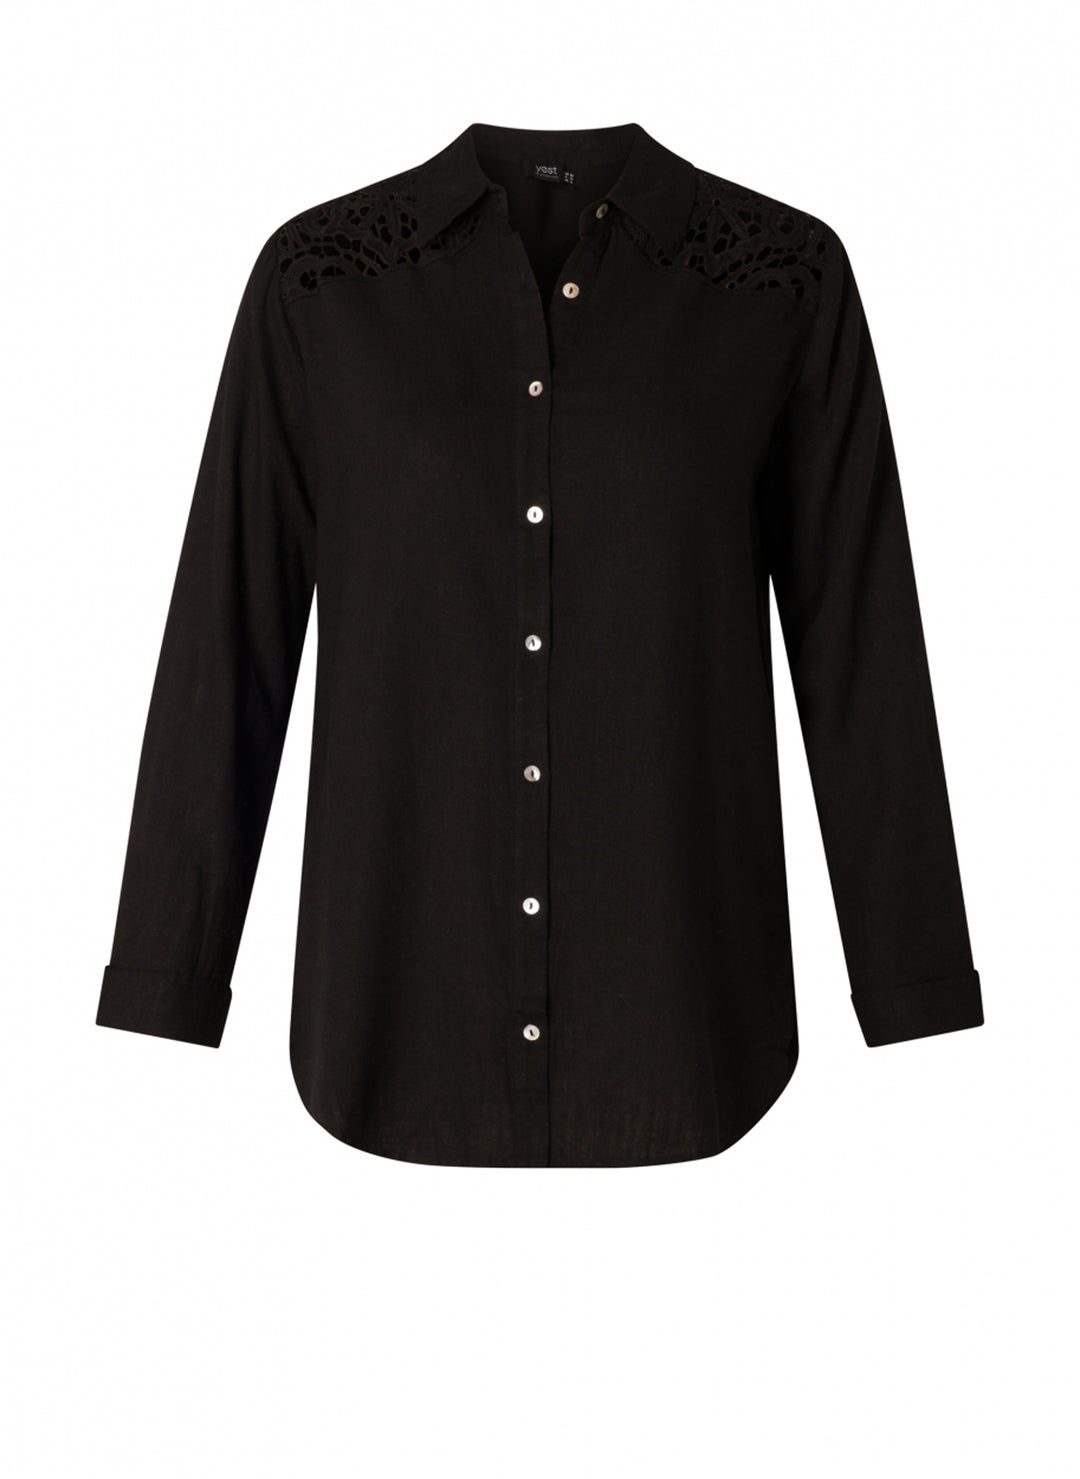 zwarte blouse met kanten afwerking - yesta - - grote maten - dameskleding - kledingwinkel - herent - leuven